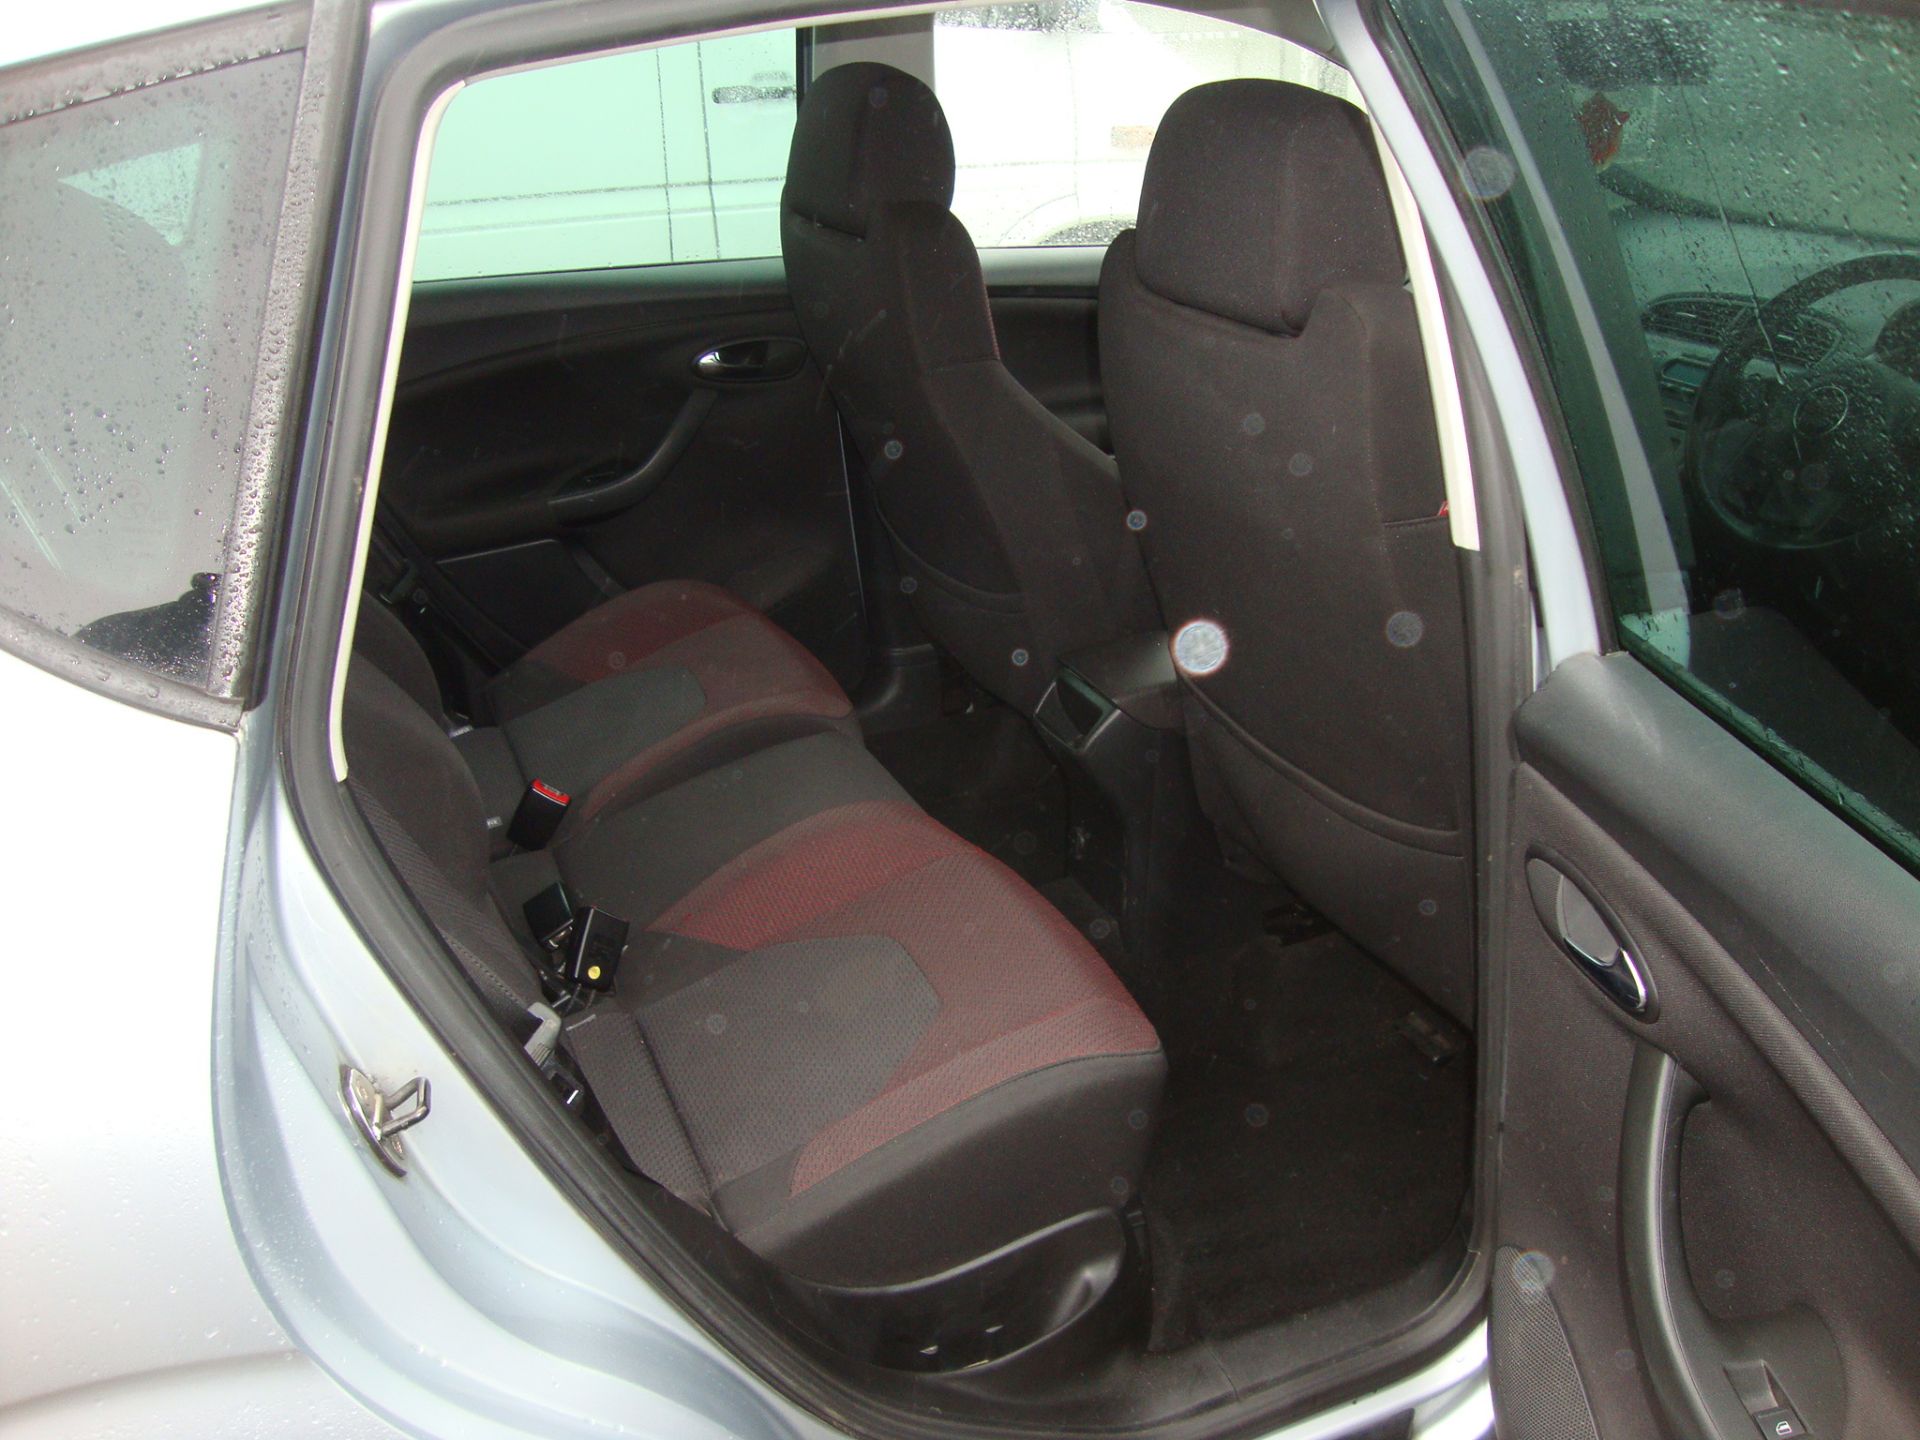 YR05 WSY Seat Toledo Sport FSI 5-door hatchback - Image 10 of 12